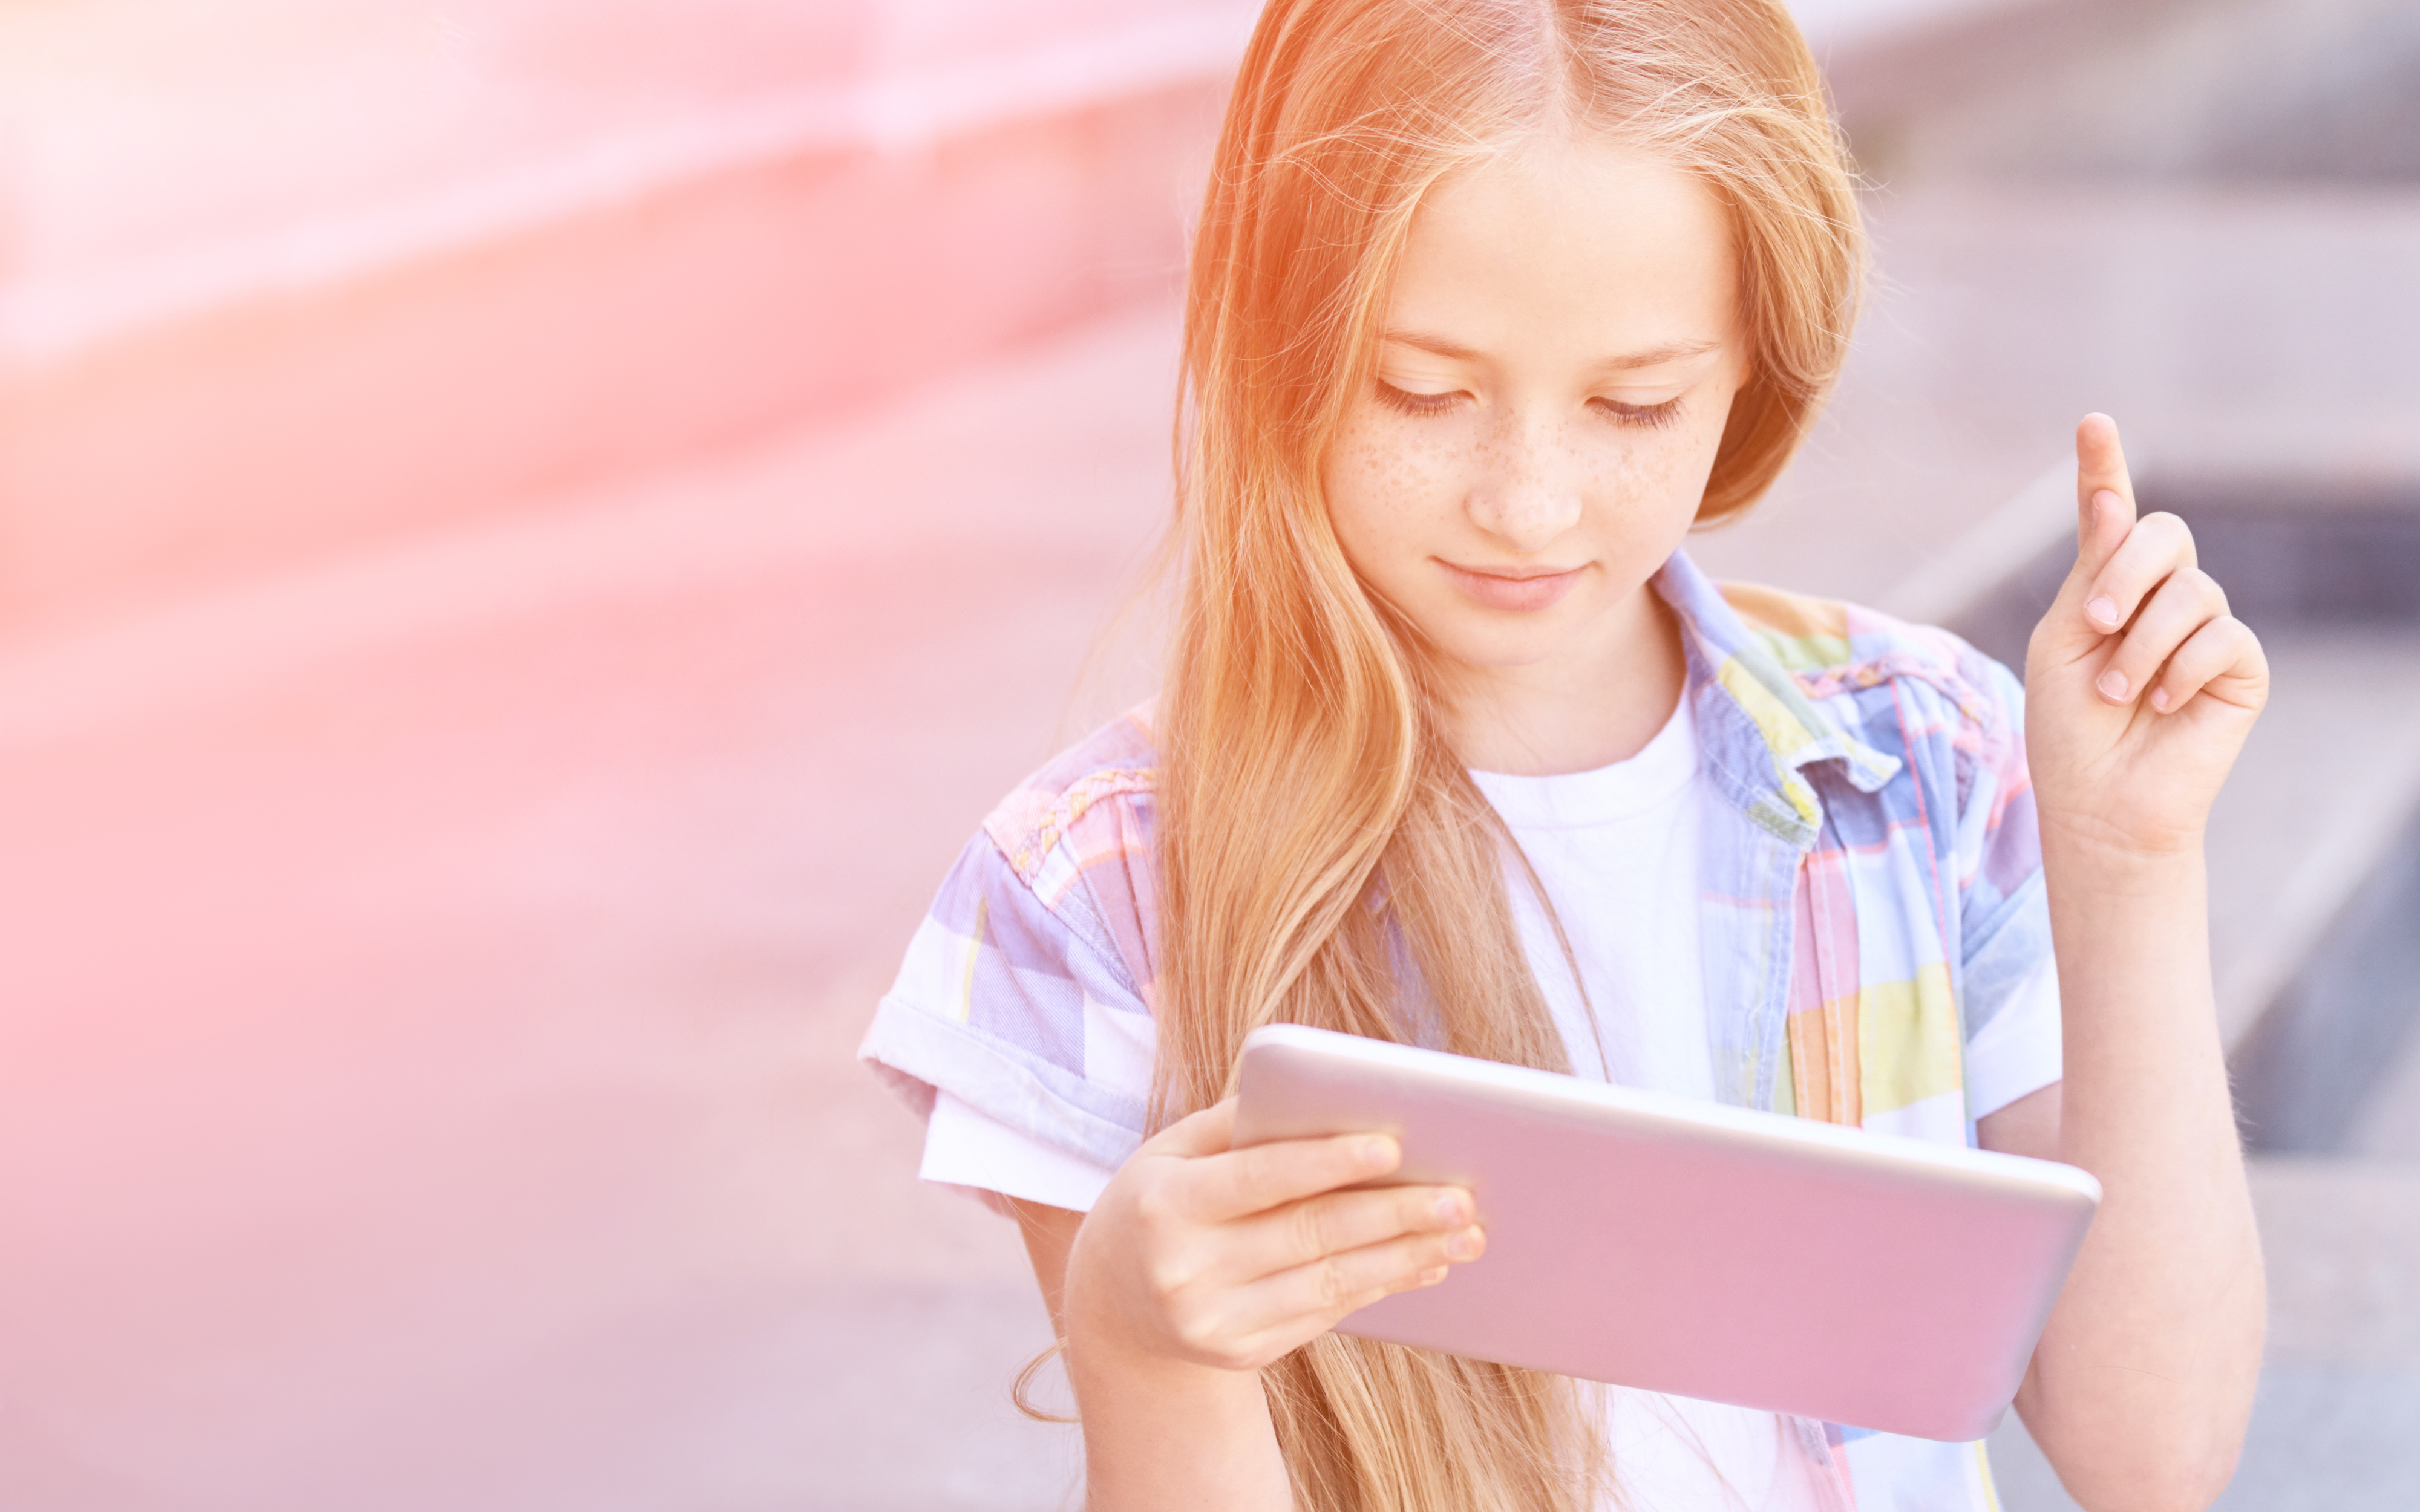 Fotografia di una bambina che sta usando un tablet